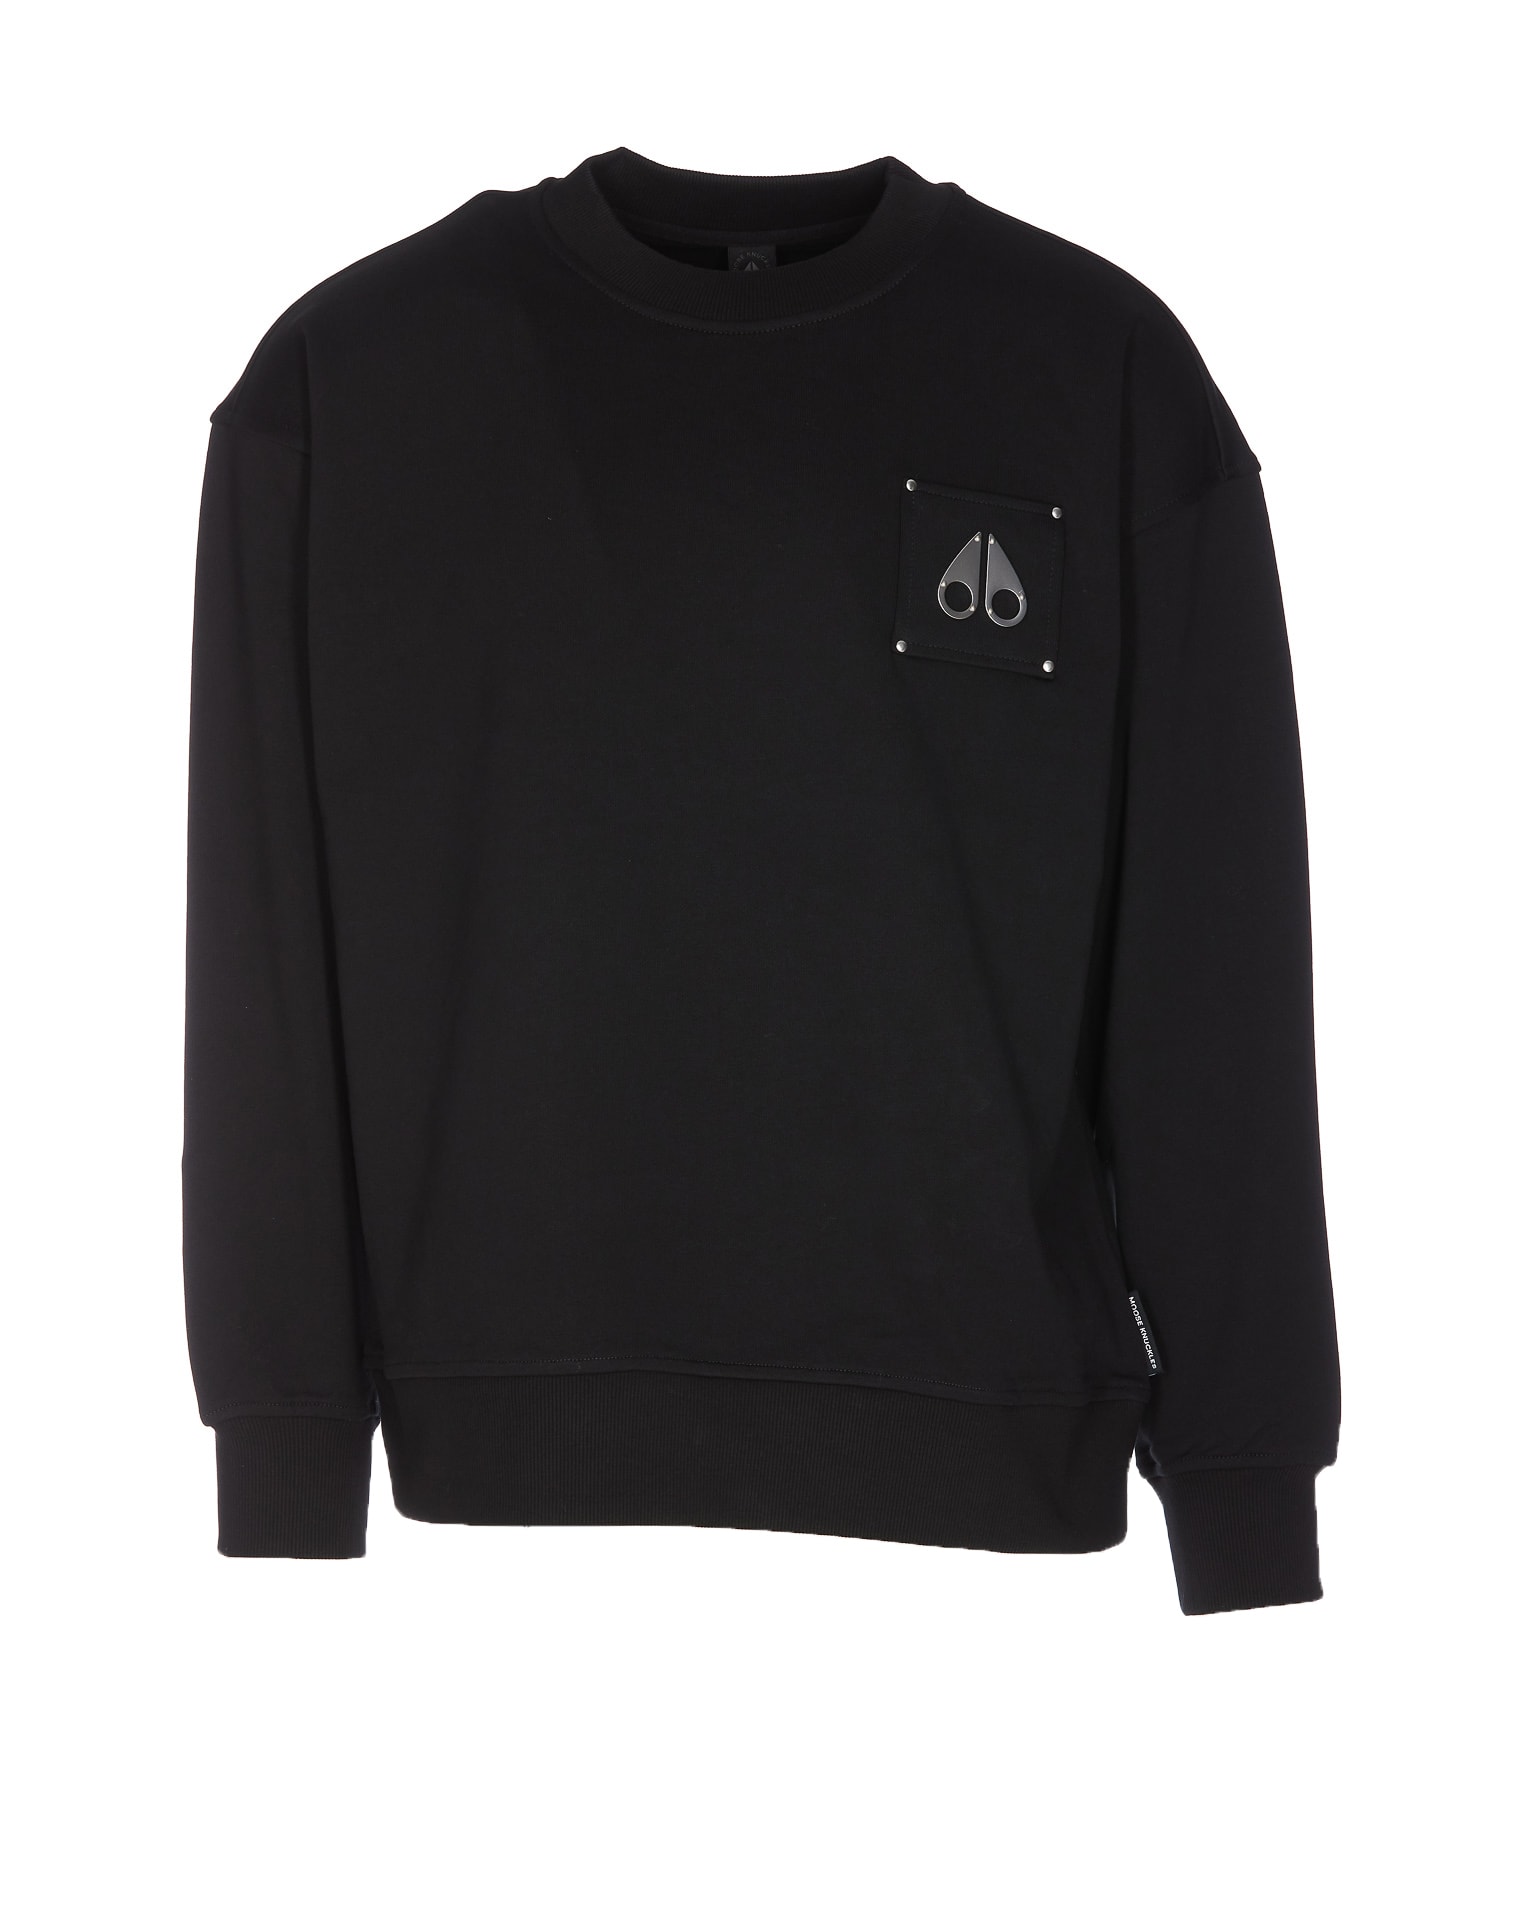 Moose Knuckles Brooklyn Sweatshirt In Black